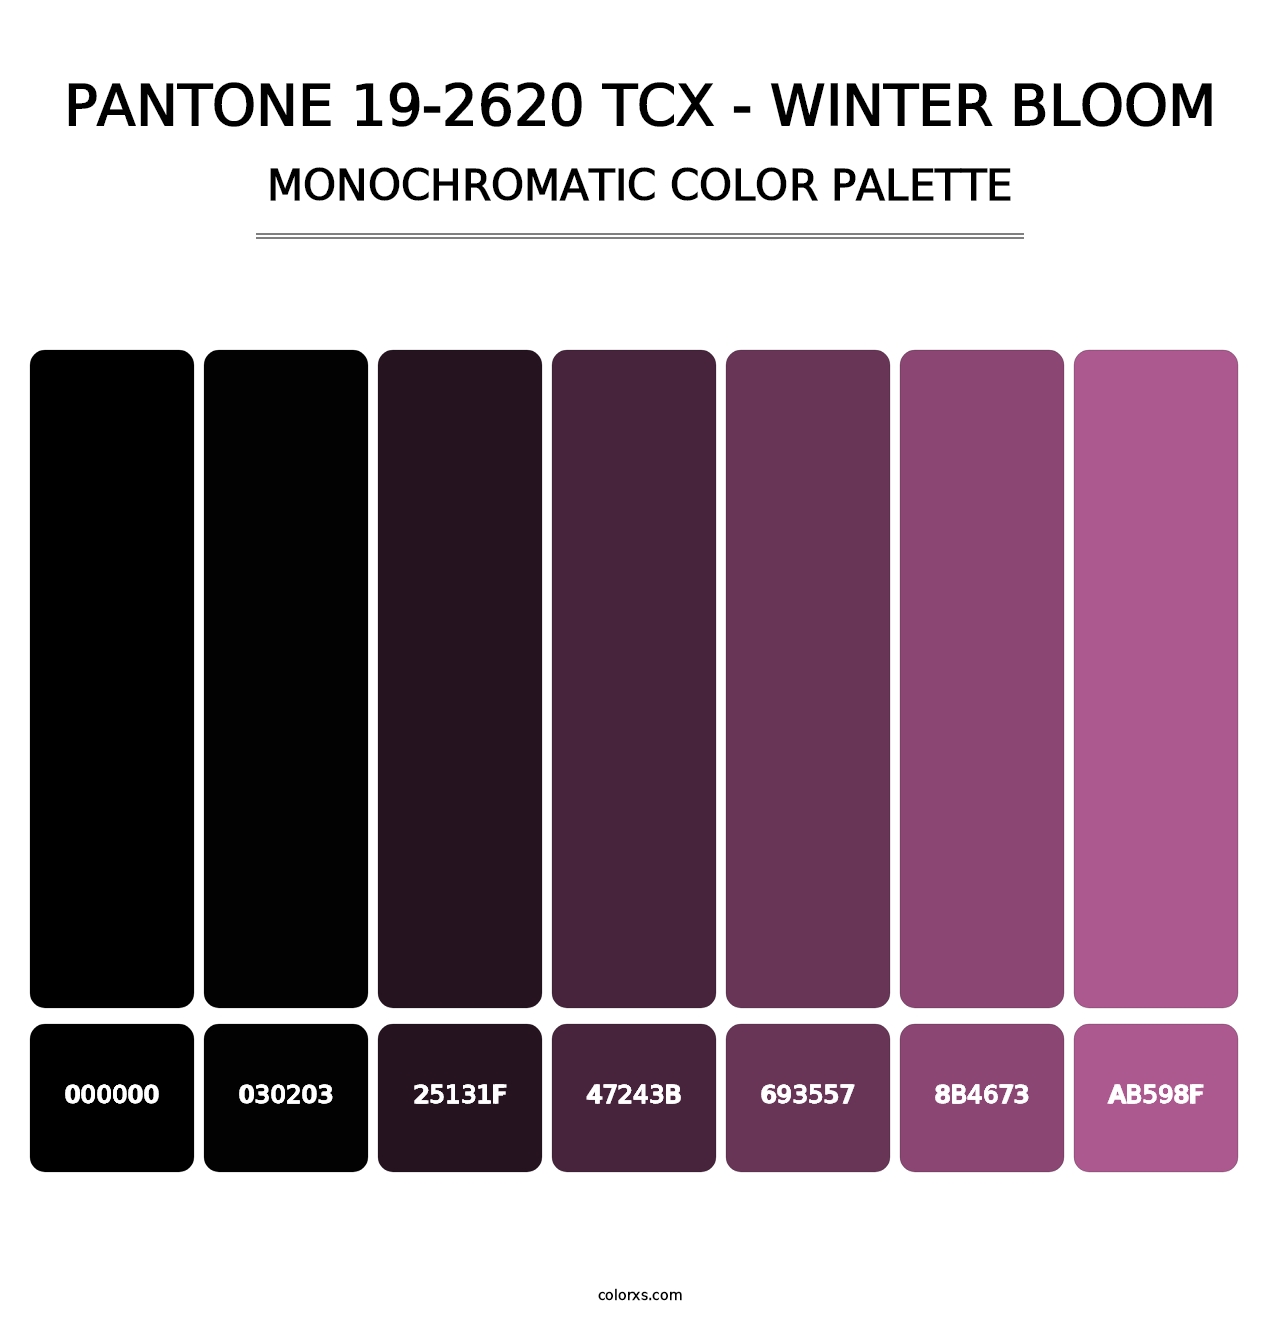 PANTONE 19-2620 TCX - Winter Bloom - Monochromatic Color Palette